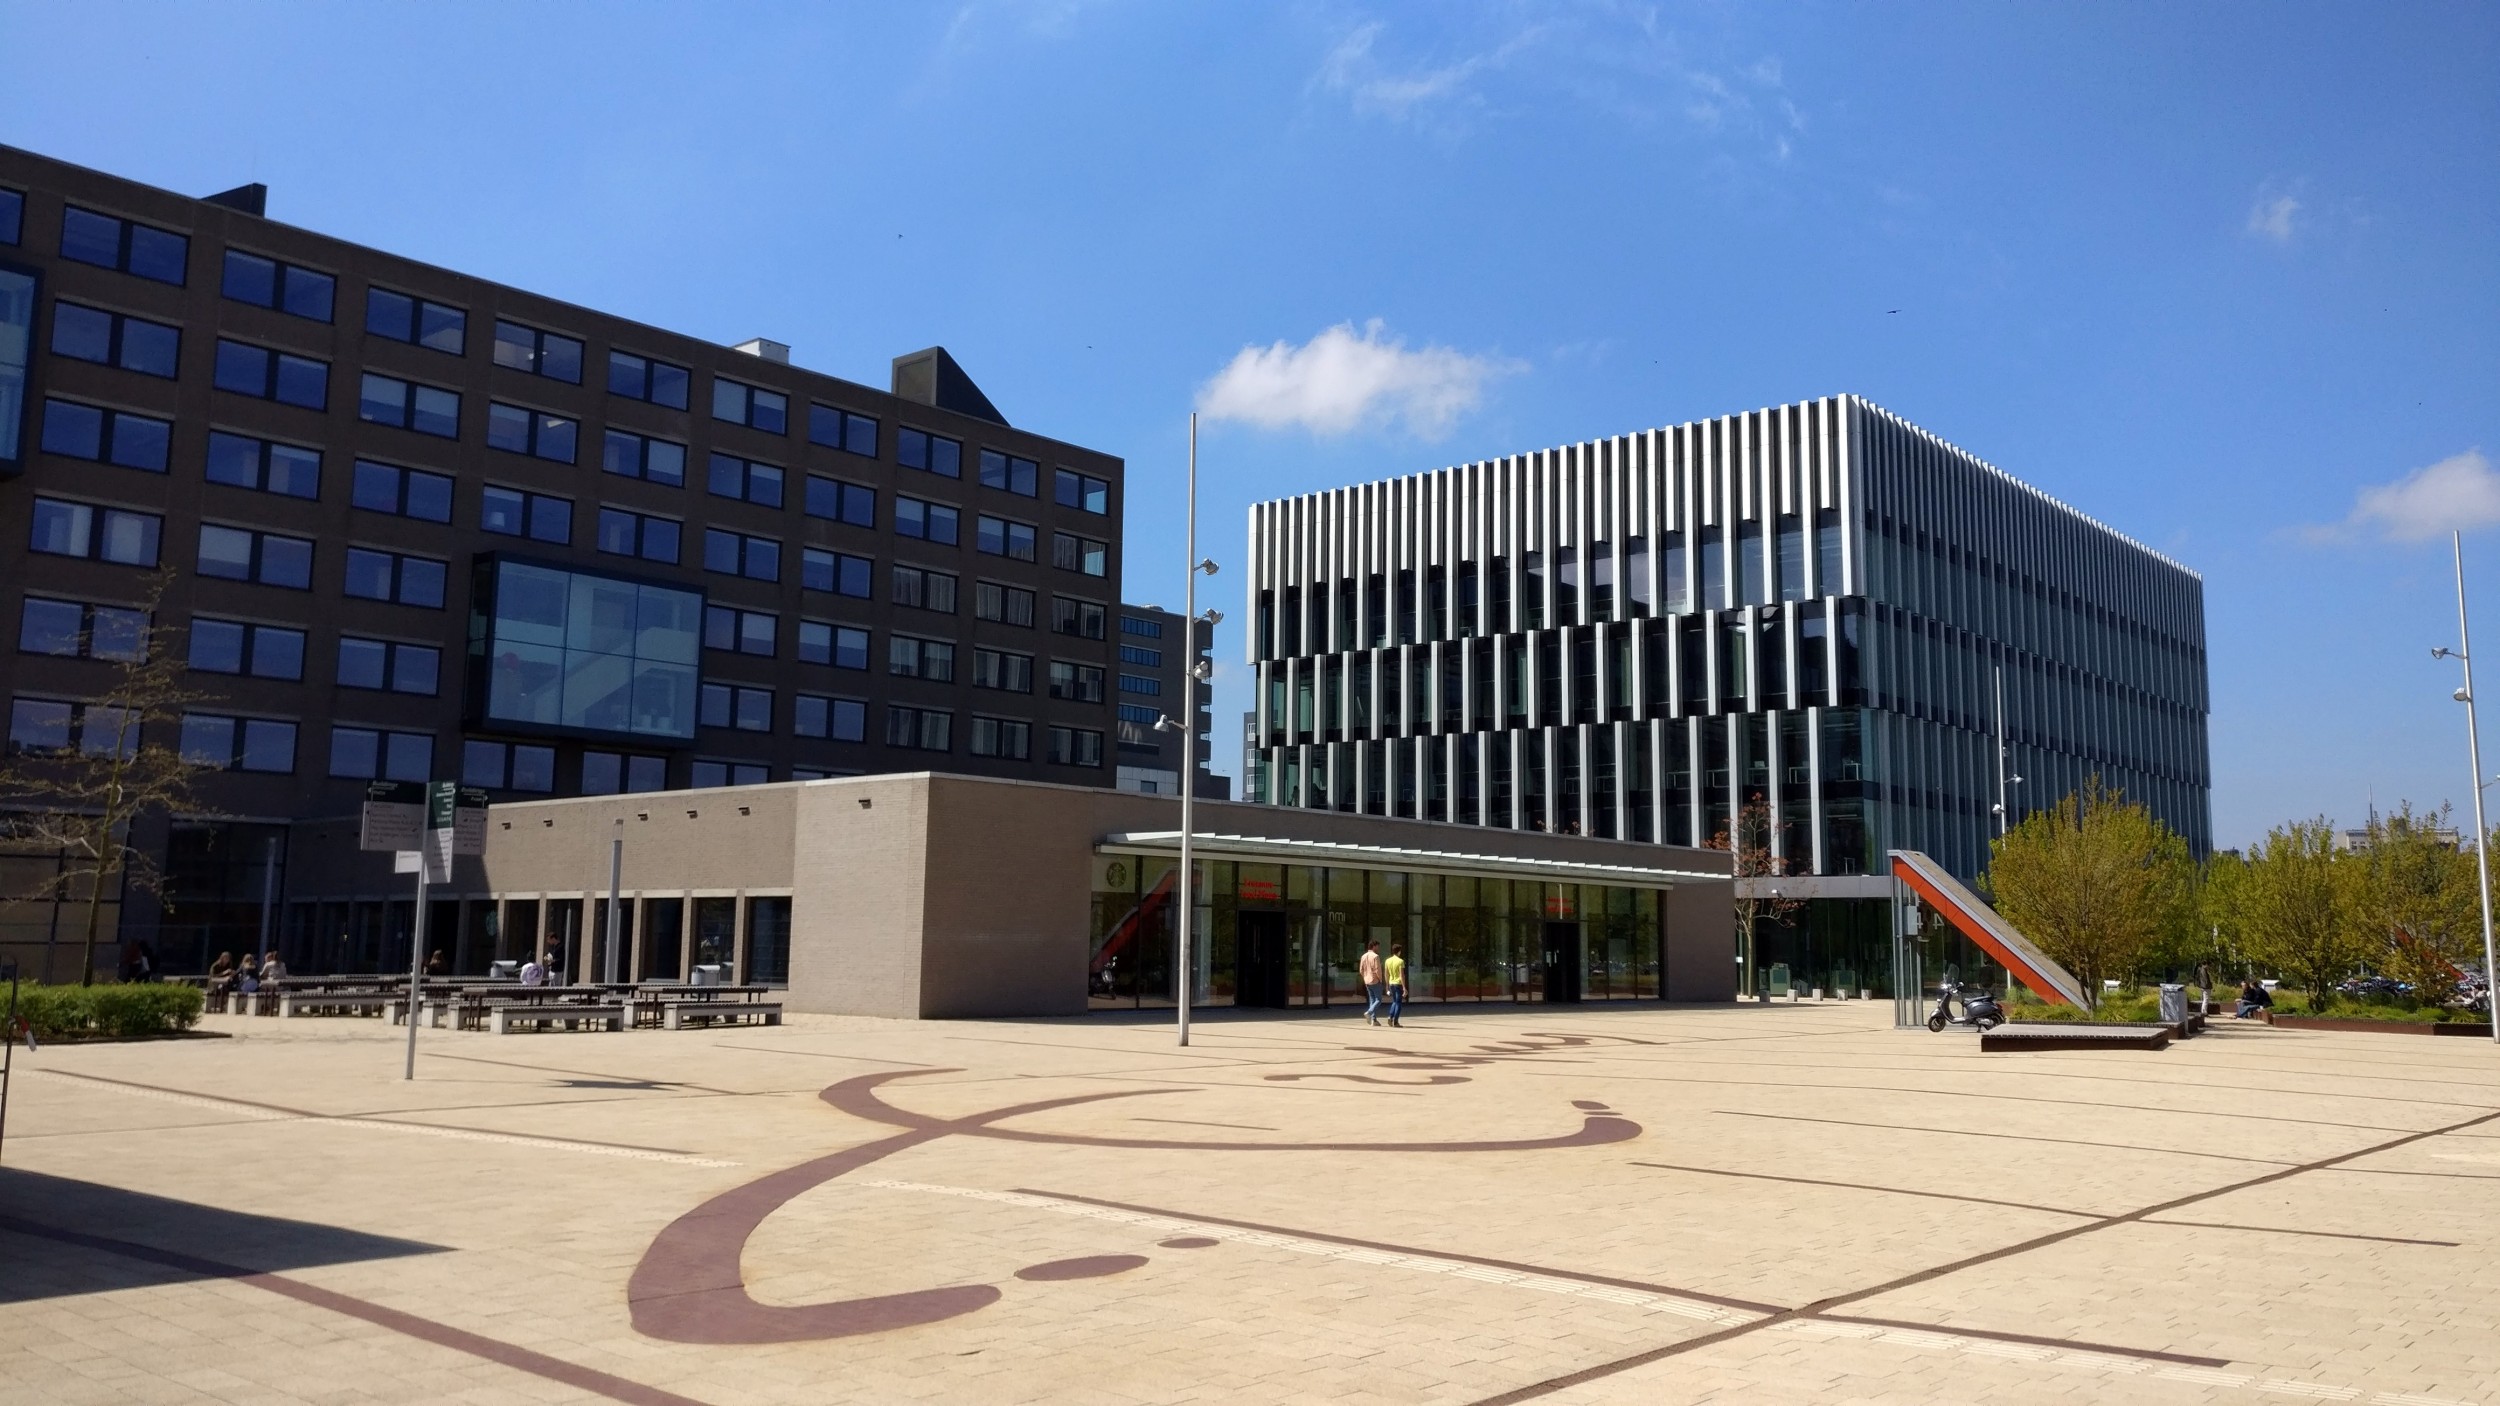 Erasmus University Campus : Rotterdam | Visions of Travel